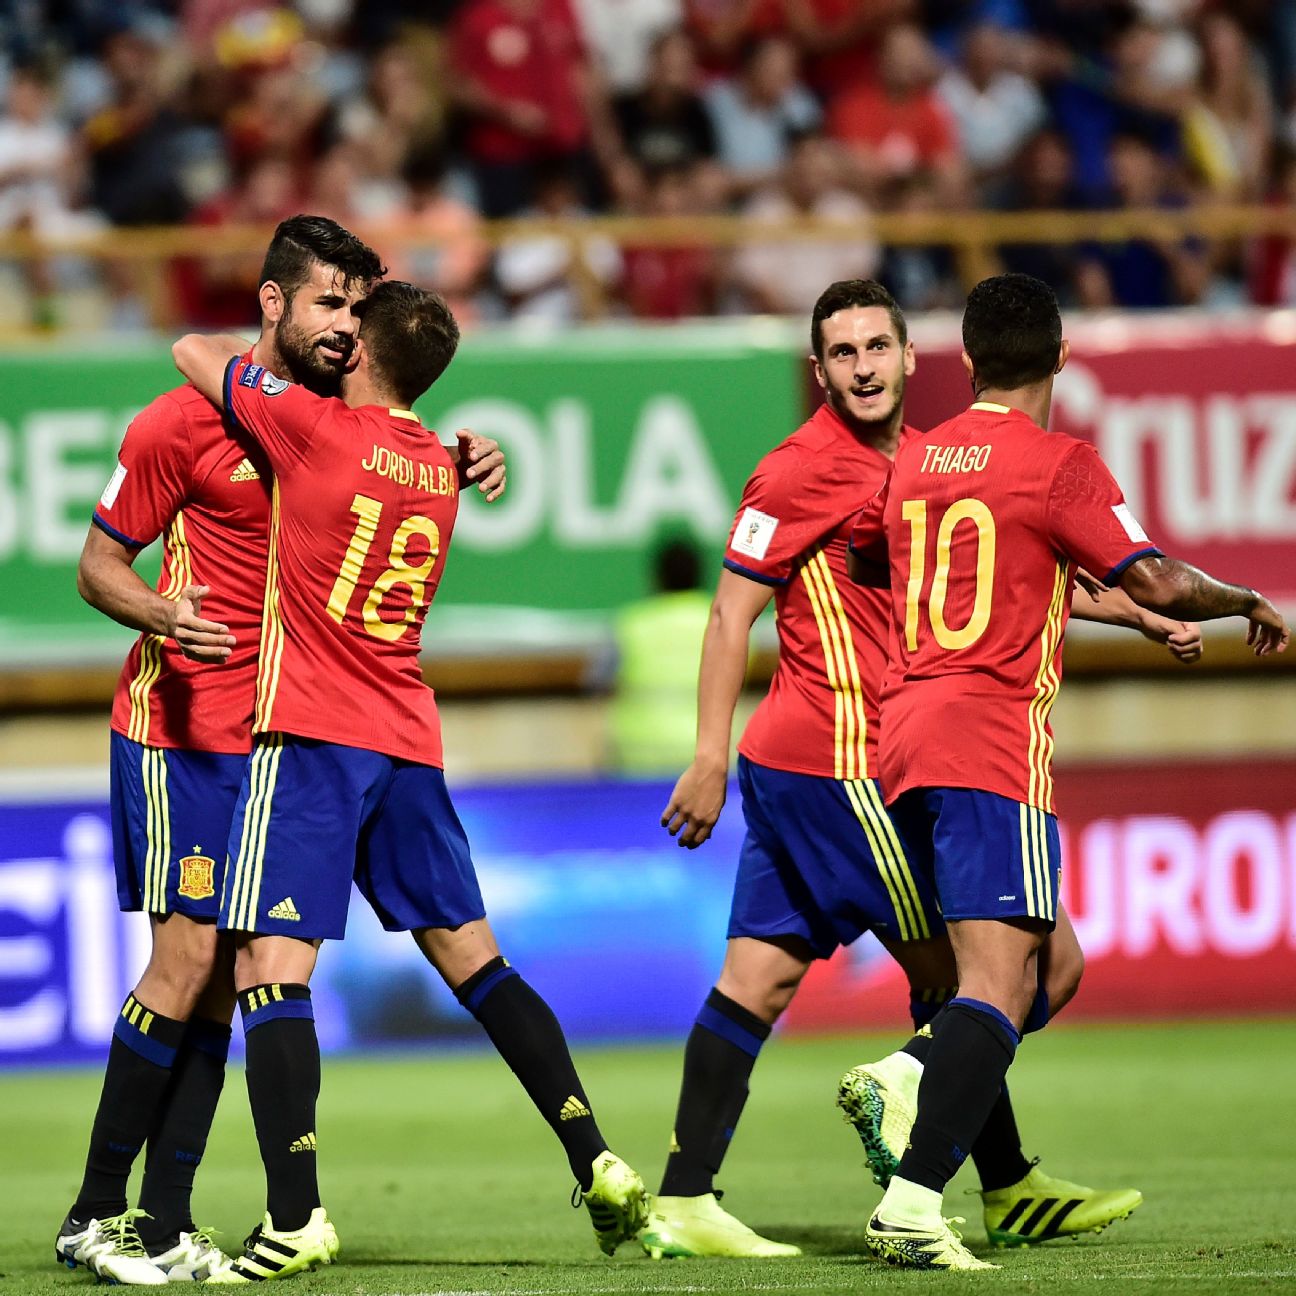 Spain 8-0 Liechtenstein (Sep 5, 2016) Game Analysis photo